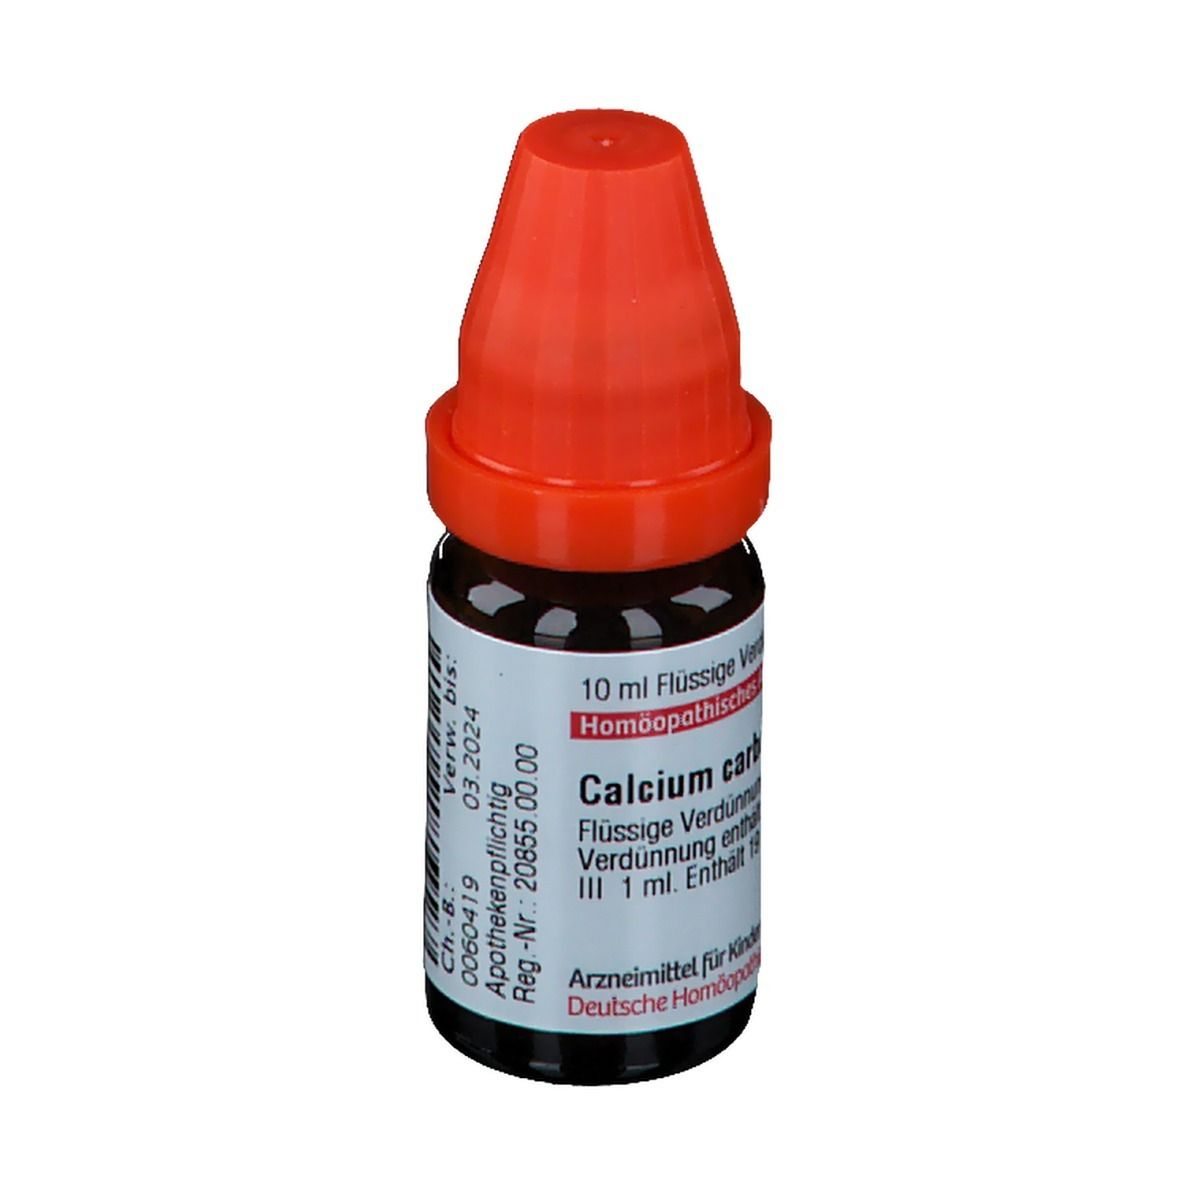 DHU Calcium Carbonicum Hahnemanni LM III